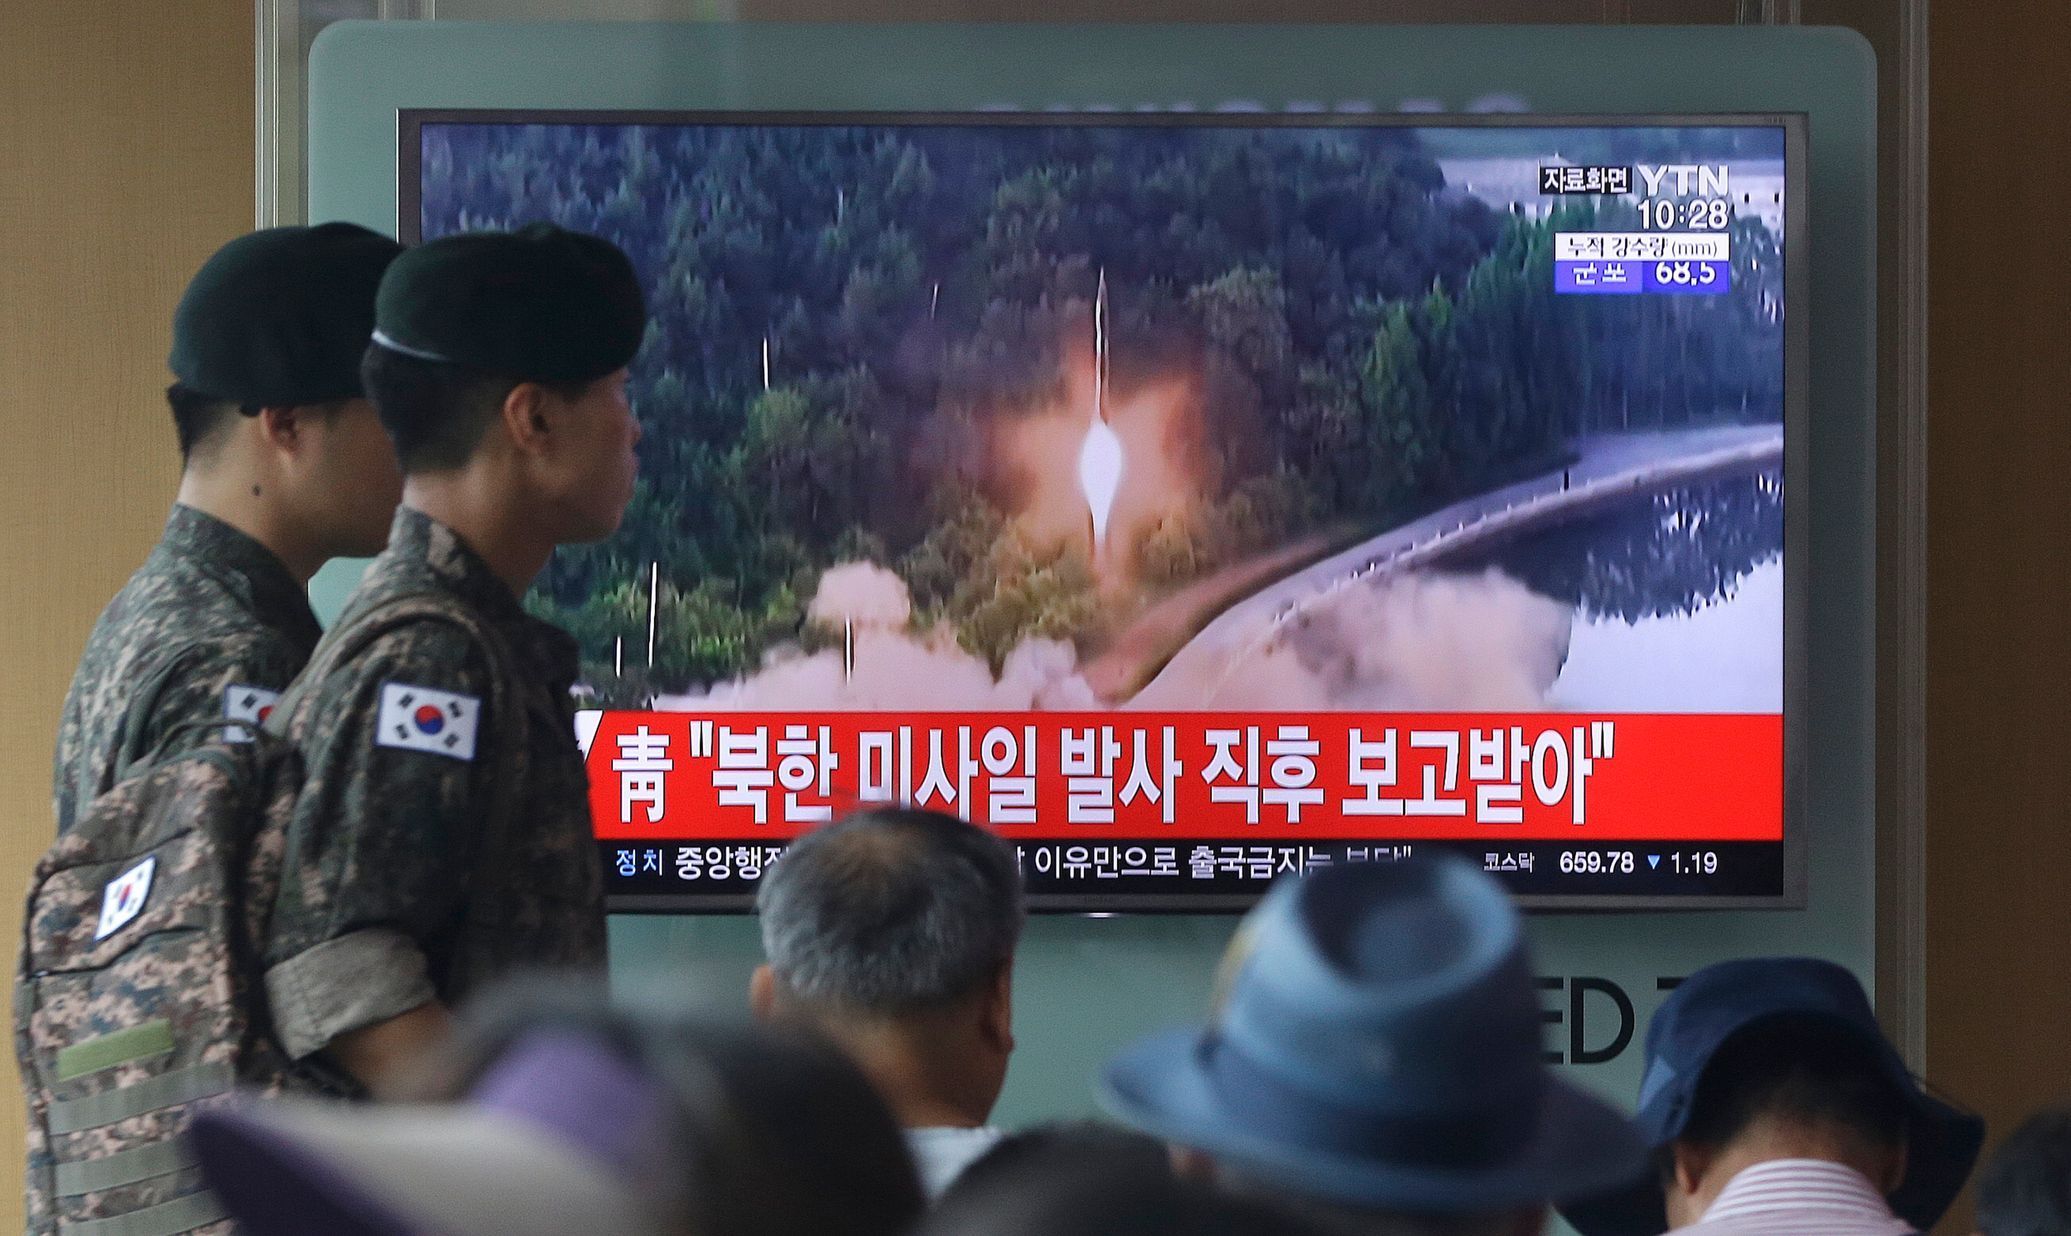 Televize v Soulu ukazuje, jak KLDR oznámila, že poprvé vyzkoušela mezikontinentální raketu.